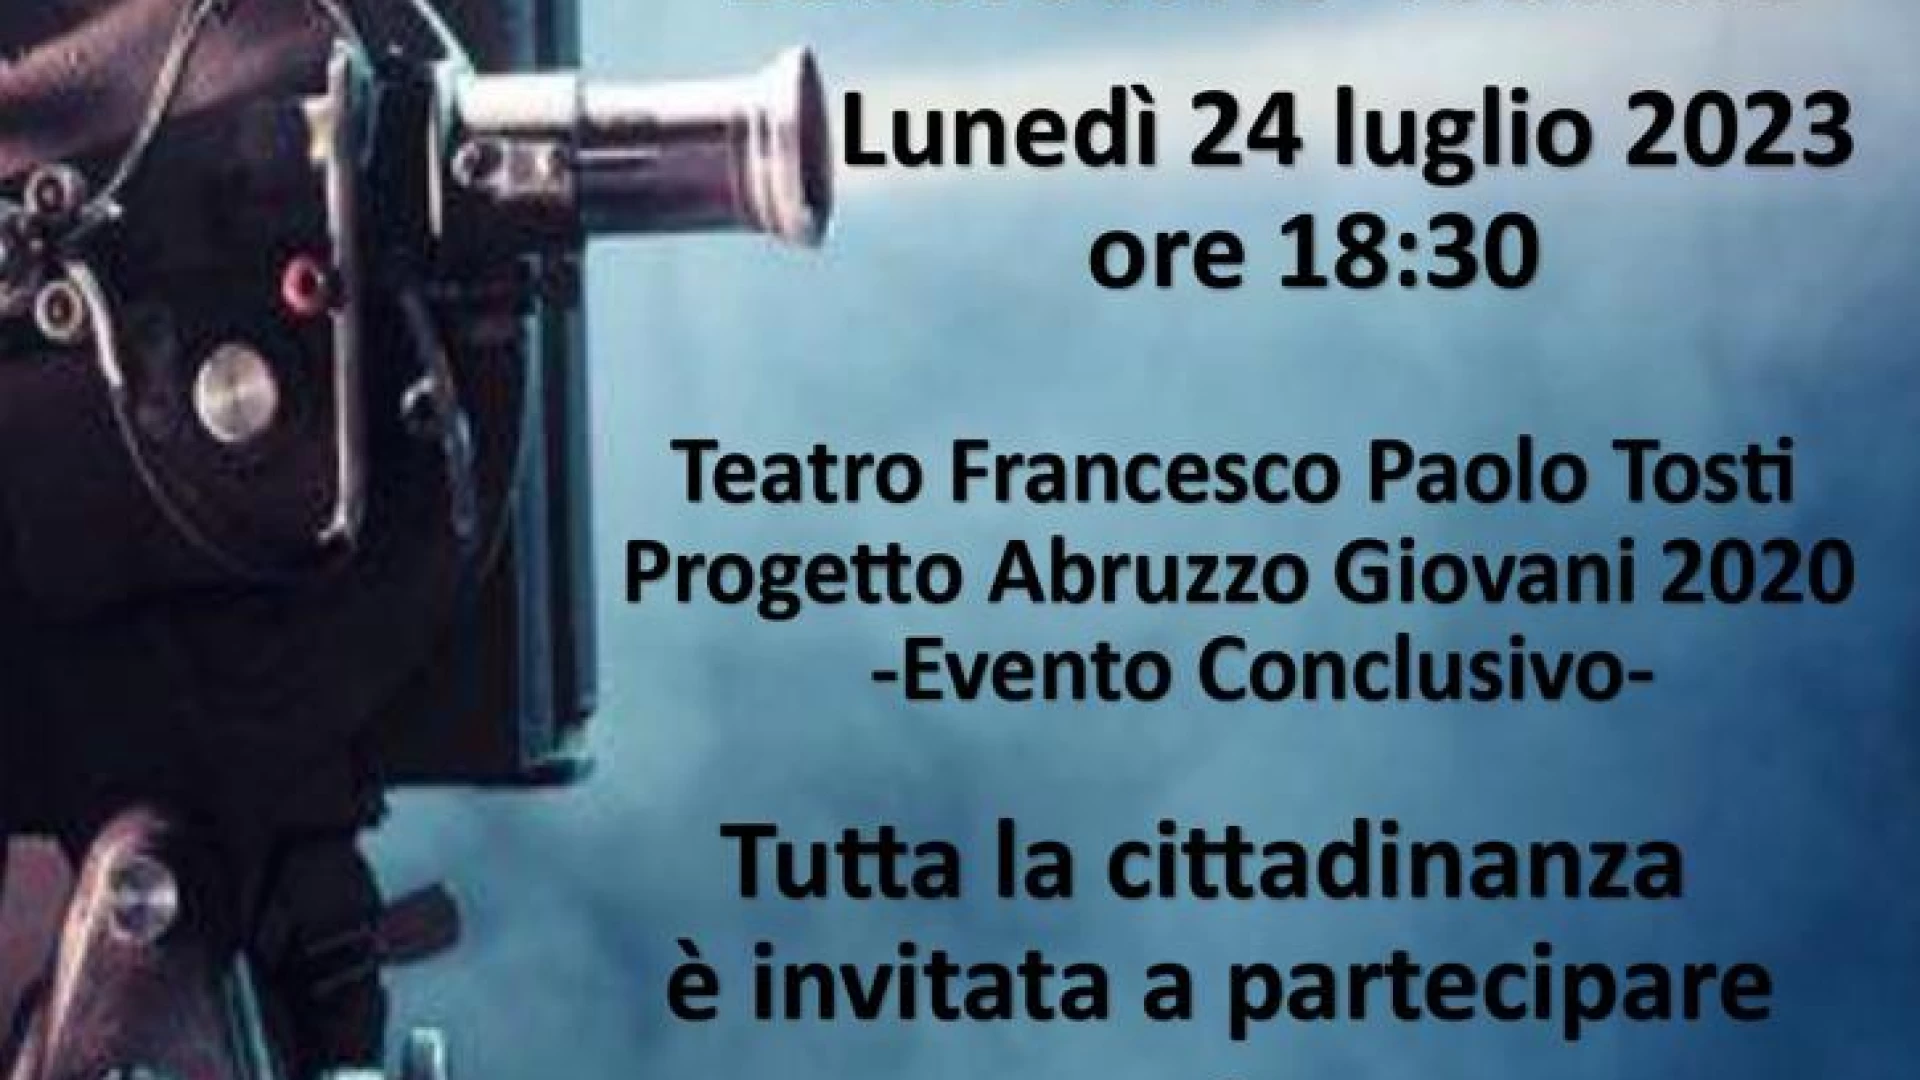 Progetto Abruzzo Giovani 2020, l’evento conclusivo lunedì 24 luglio al Teatro Tosti di Castel Di Sangro.